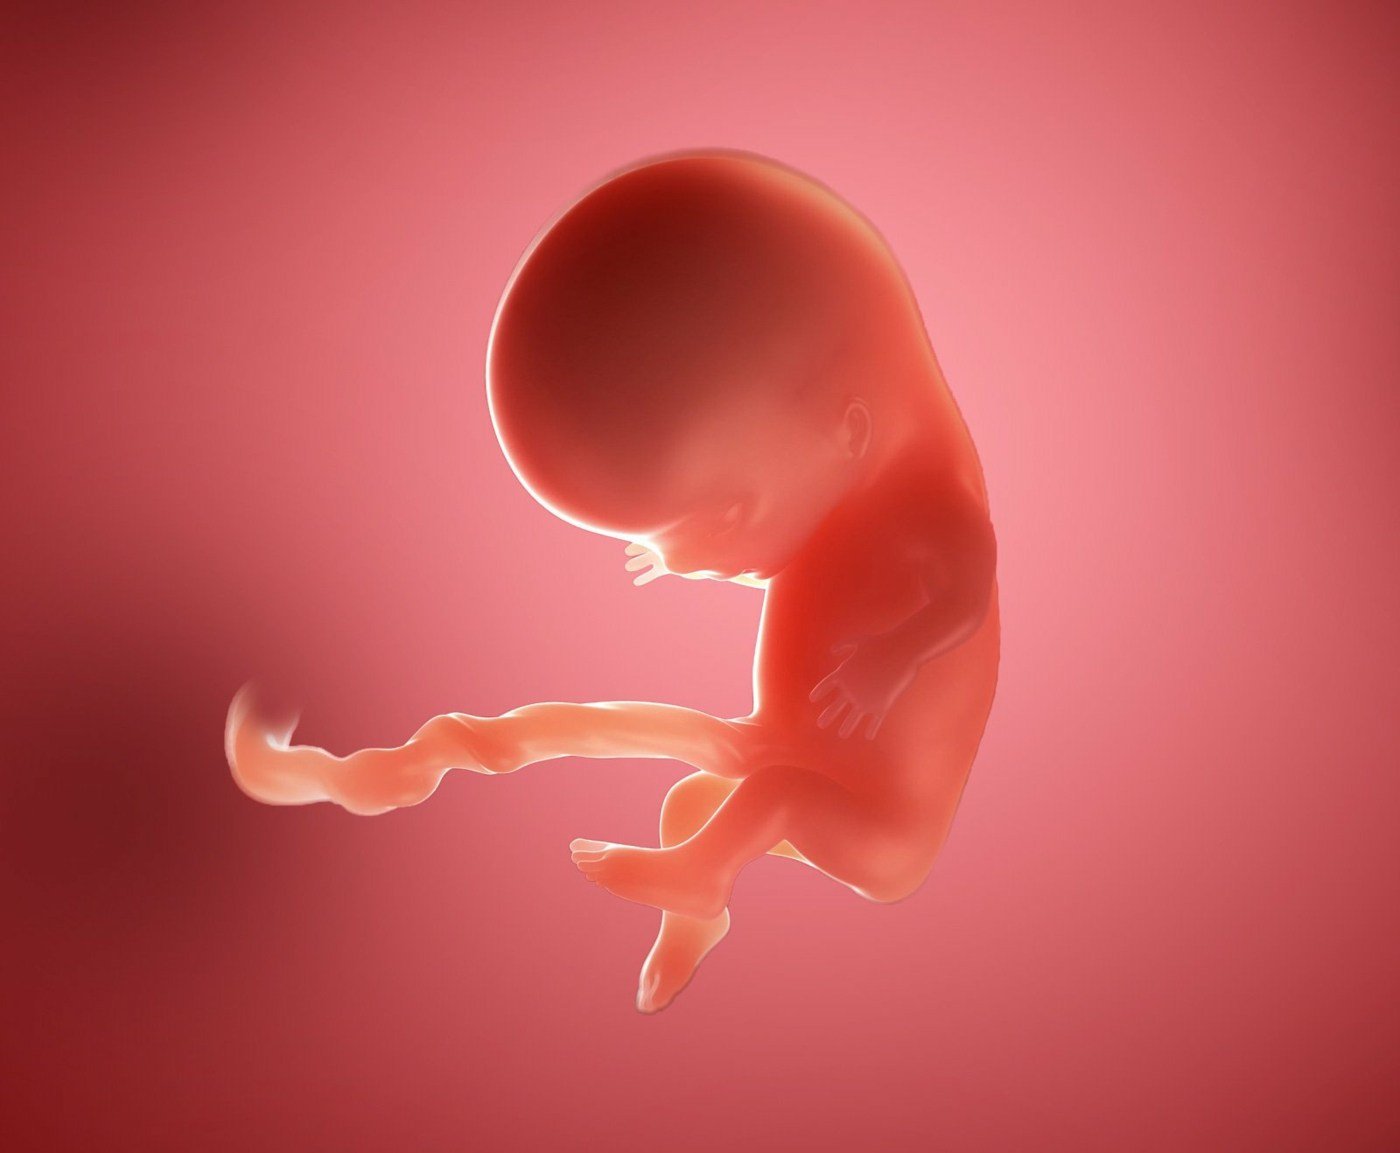 Entwicklung des Fötus und Embryo mit 10 Wochen - Arme und Beine sind entwickelt